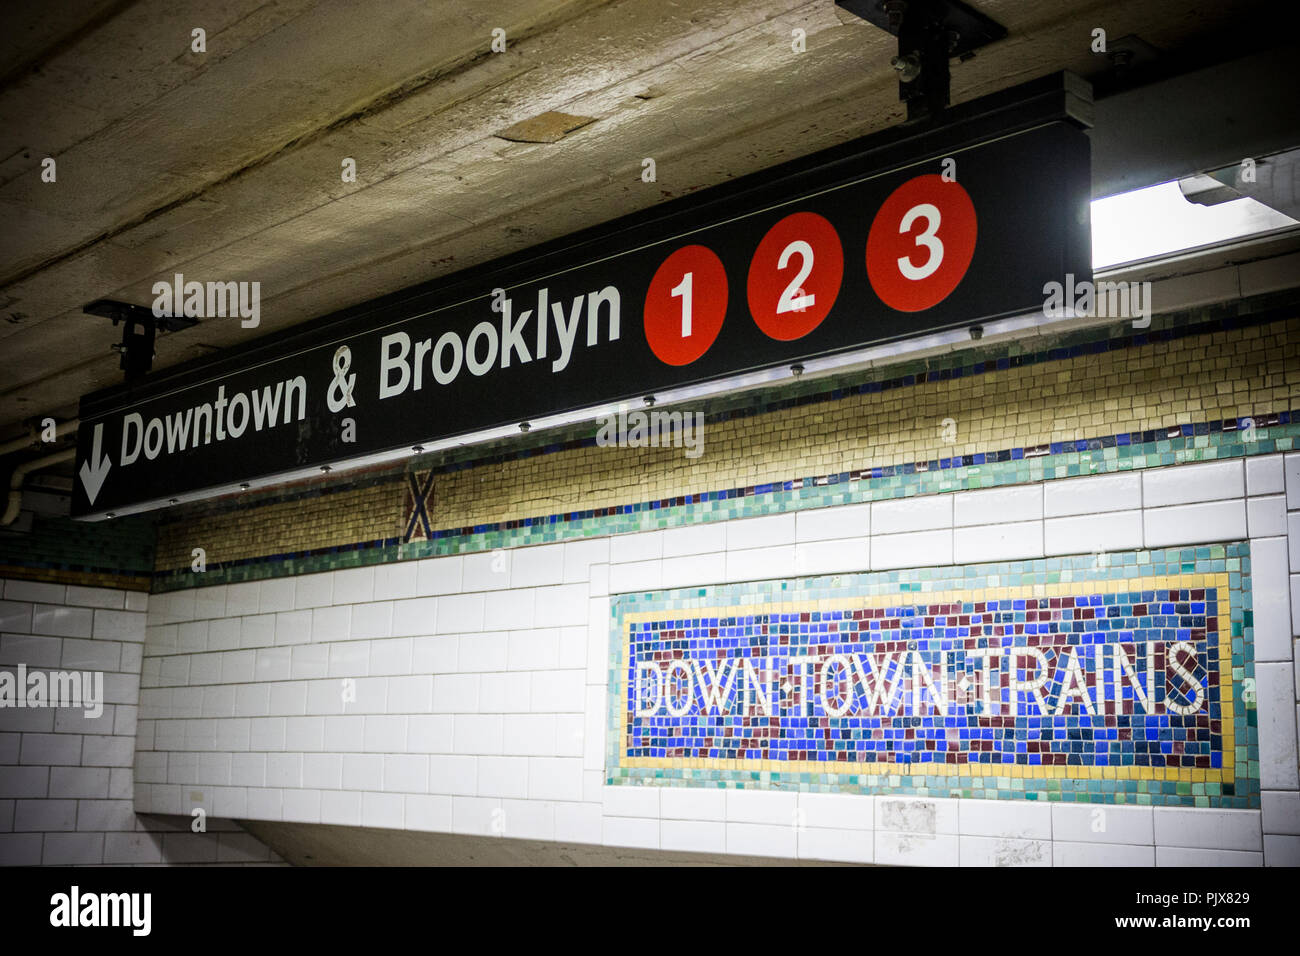 La città di New York. Ingresso a una stazione della metropolitana, con le indicazioni per le linee 1, 2 e 3, vincolati per Downtown Brooklyn Foto Stock